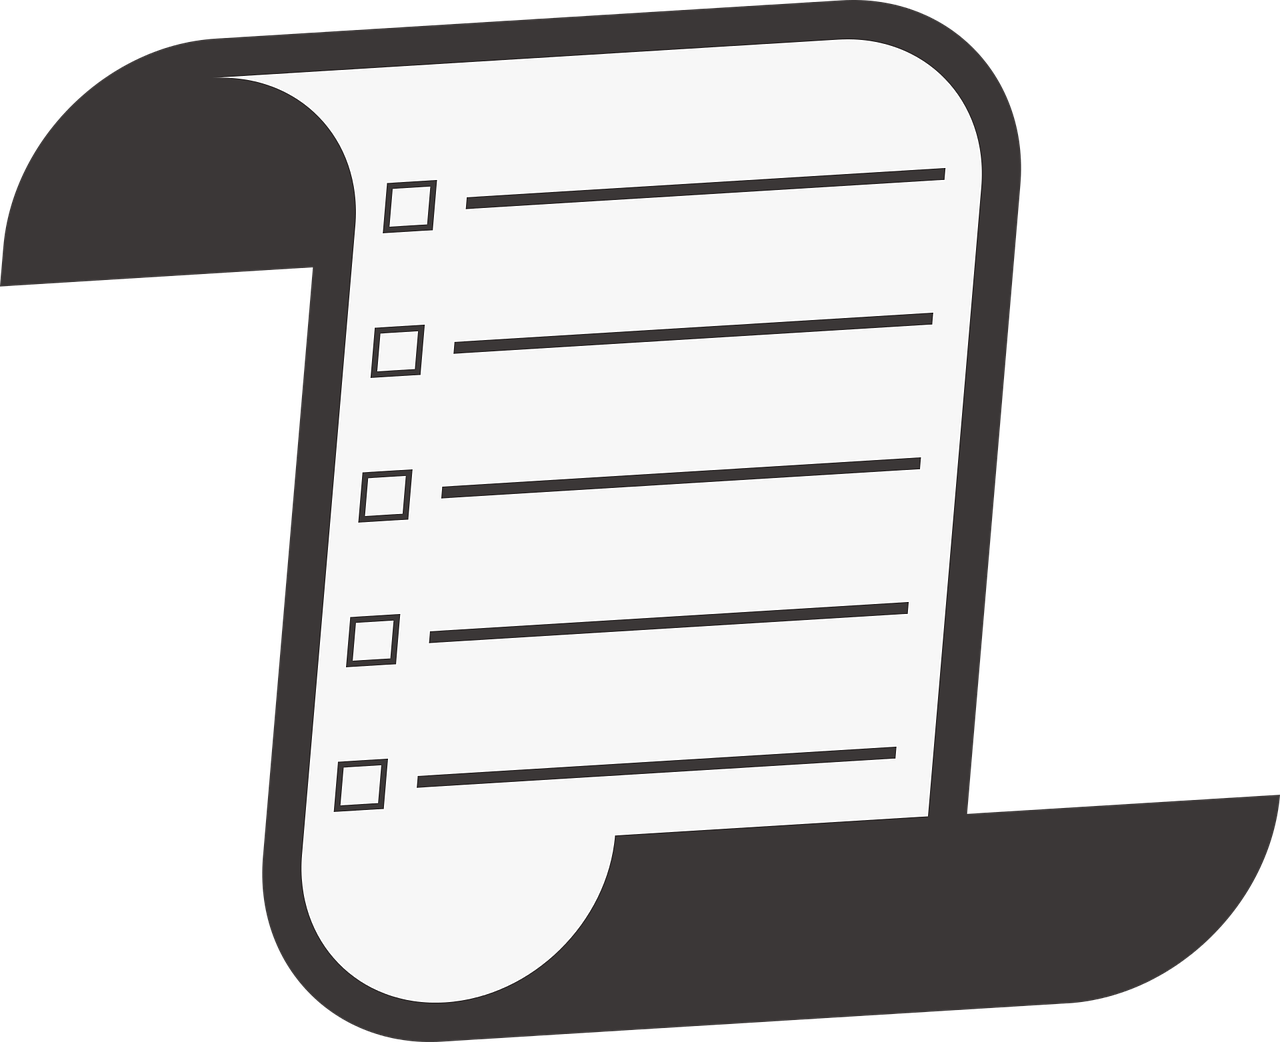 A checklist